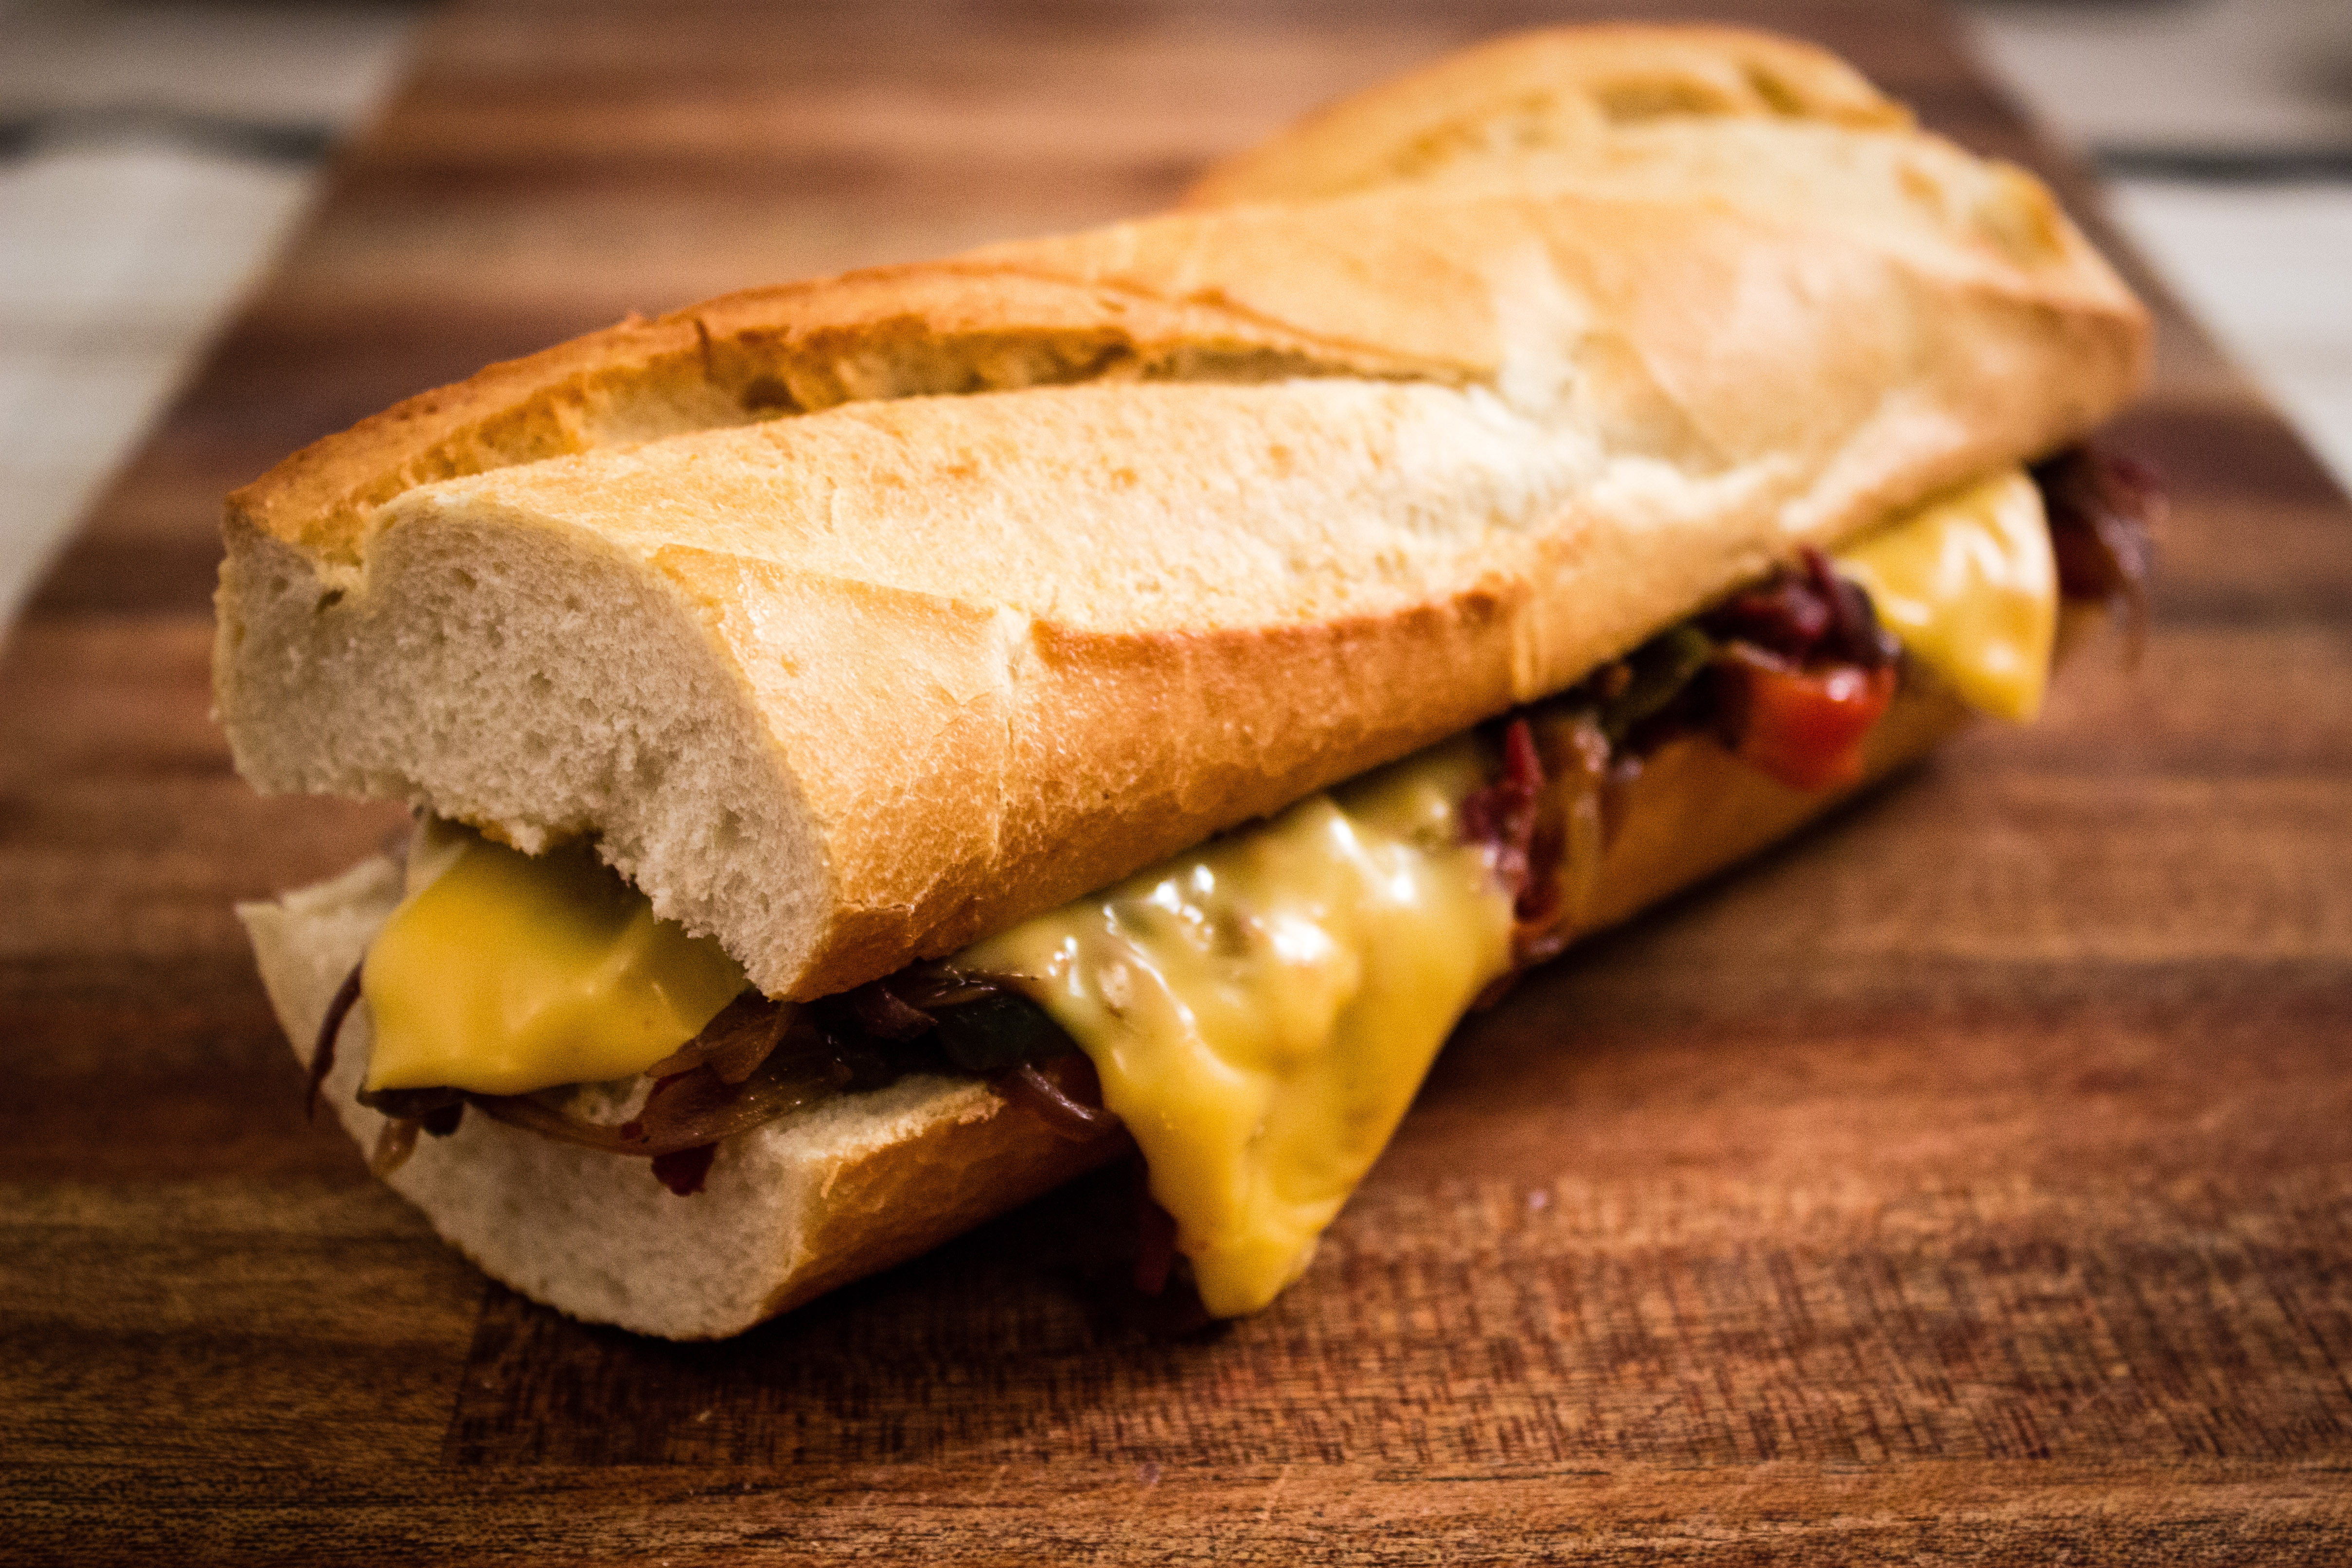 Philly cheesesteak sandwich